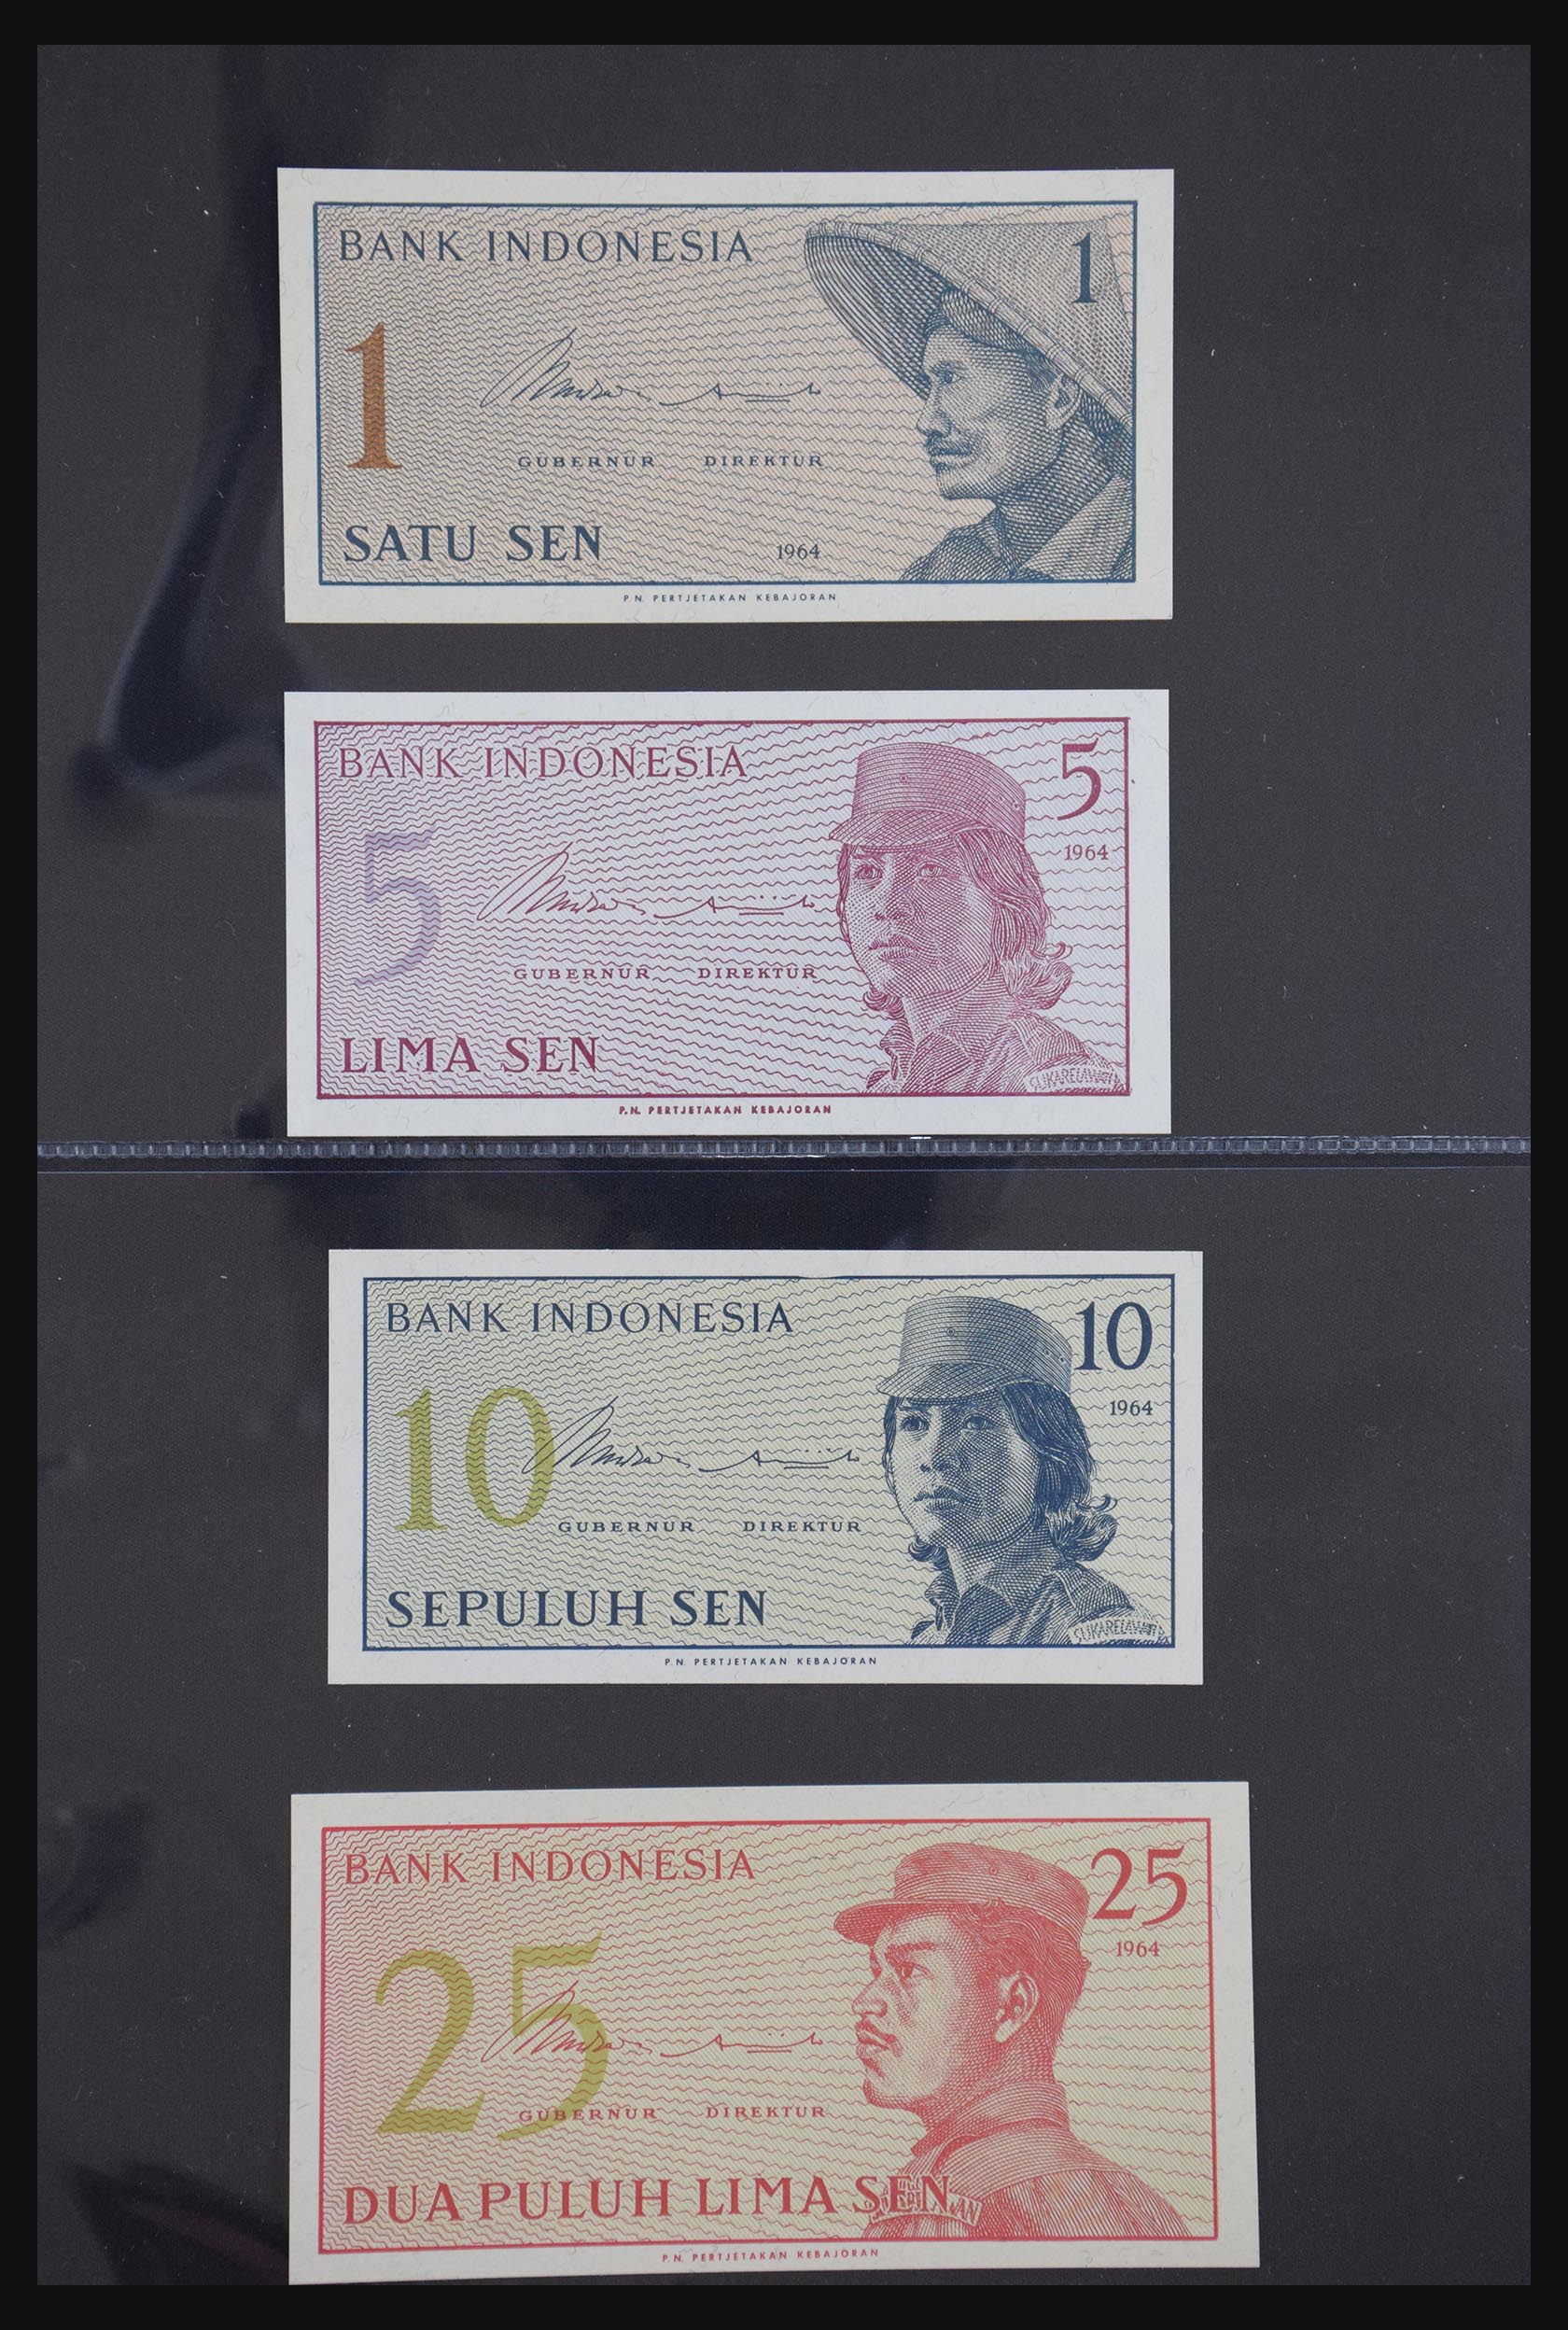 29404 077 - 29404 Netherlands banknotes 1924-1997.